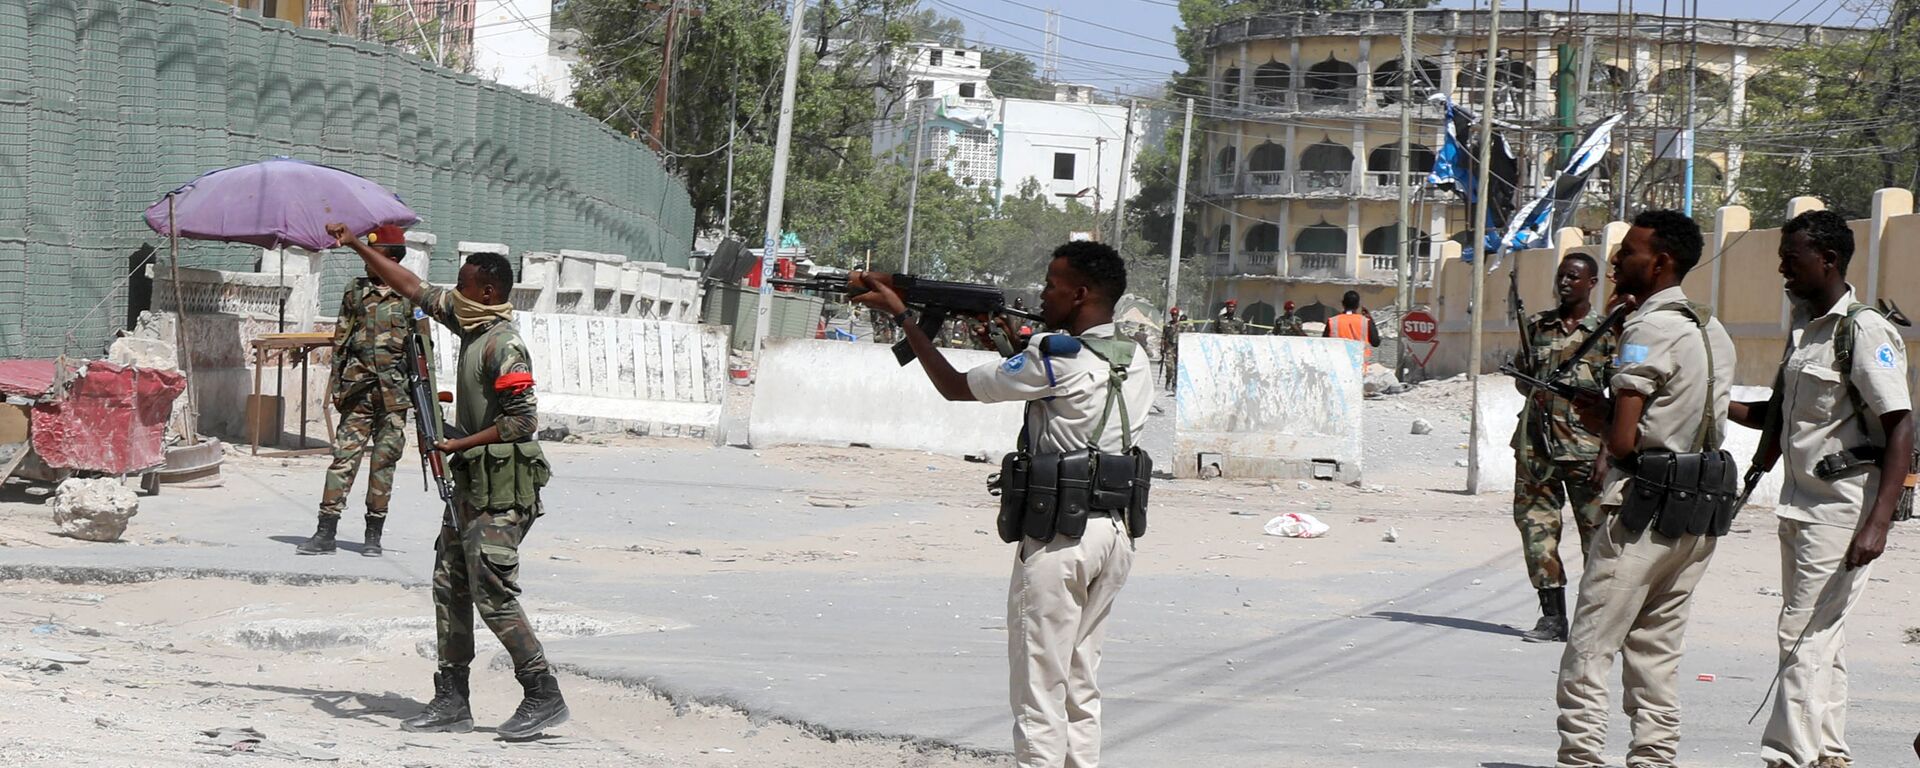 قوات الأمن الصومالية تؤمن الشارع بالقرب من موقع انفجار في مقديشو - سبوتنيك عربي, 1920, 26.04.2021